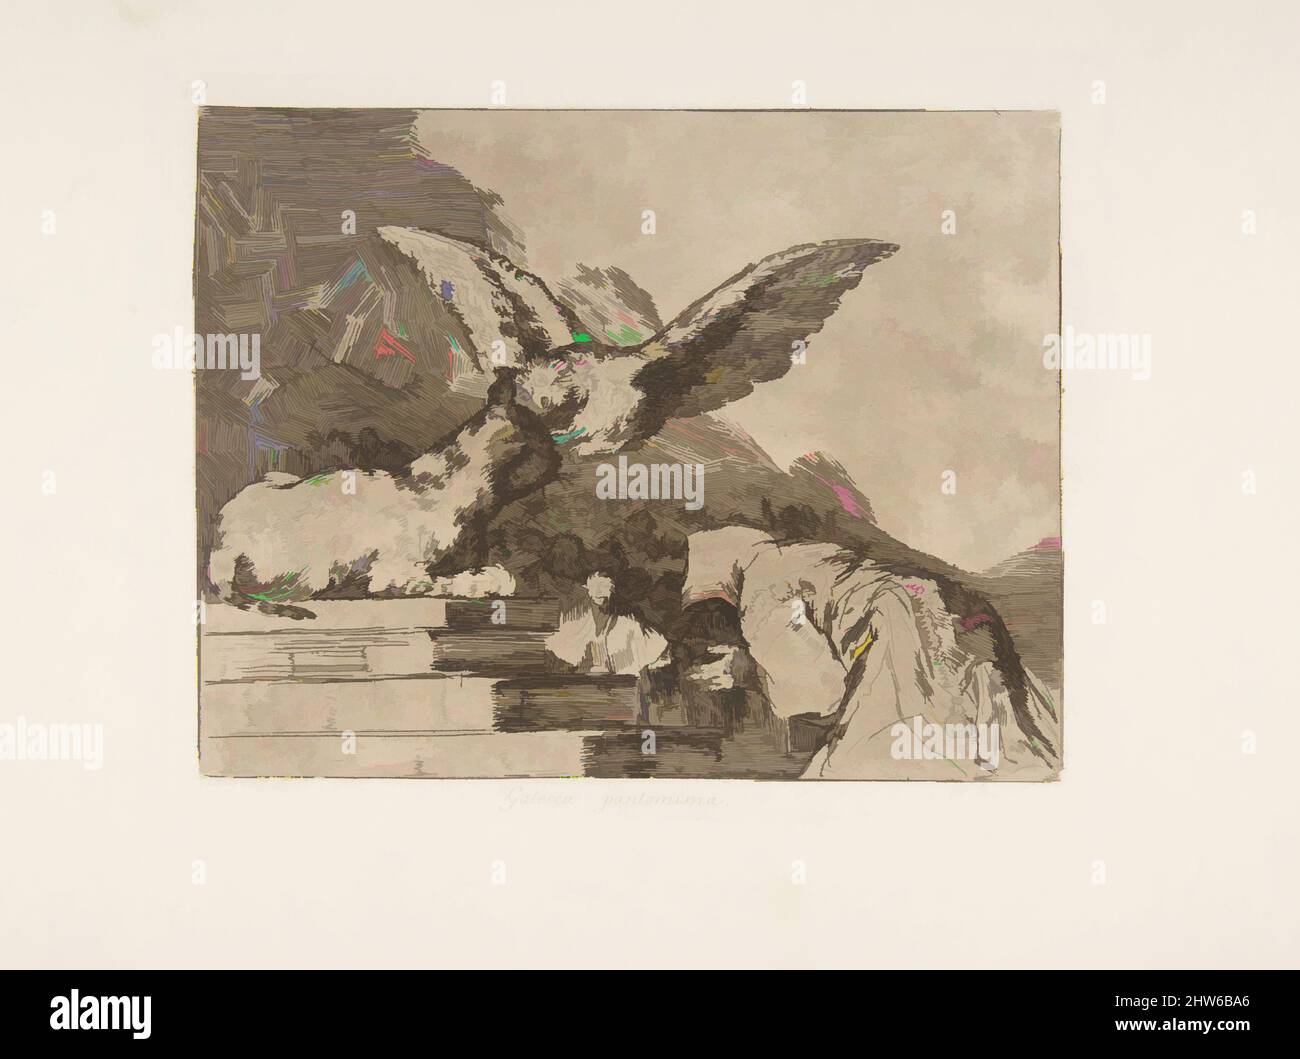 Art inspiré par la planche 73 de 'les désastres de la guerre' (Los Desastres de la Guerra): 'Félin pantomime' (Gatesca pantomima.), après 1814–15 (publié en 1863), Etching, burin et burnisher, plaque: 6 7/8 × 8 3/8 po. (17,4 × 21,2 cm), Prints, Goya (Francisco de Goya y Lucientes) (espagnol, oeuvres classiques modernisées par Artotop avec une touche de modernité. Formes, couleur et valeur, impact visuel accrocheur sur l'art émotions par la liberté d'œuvres d'art d'une manière contemporaine. Un message intemporel qui cherche une nouvelle direction créative. Artistes qui se tournent vers le support numérique et créent le NFT Artotop Banque D'Images